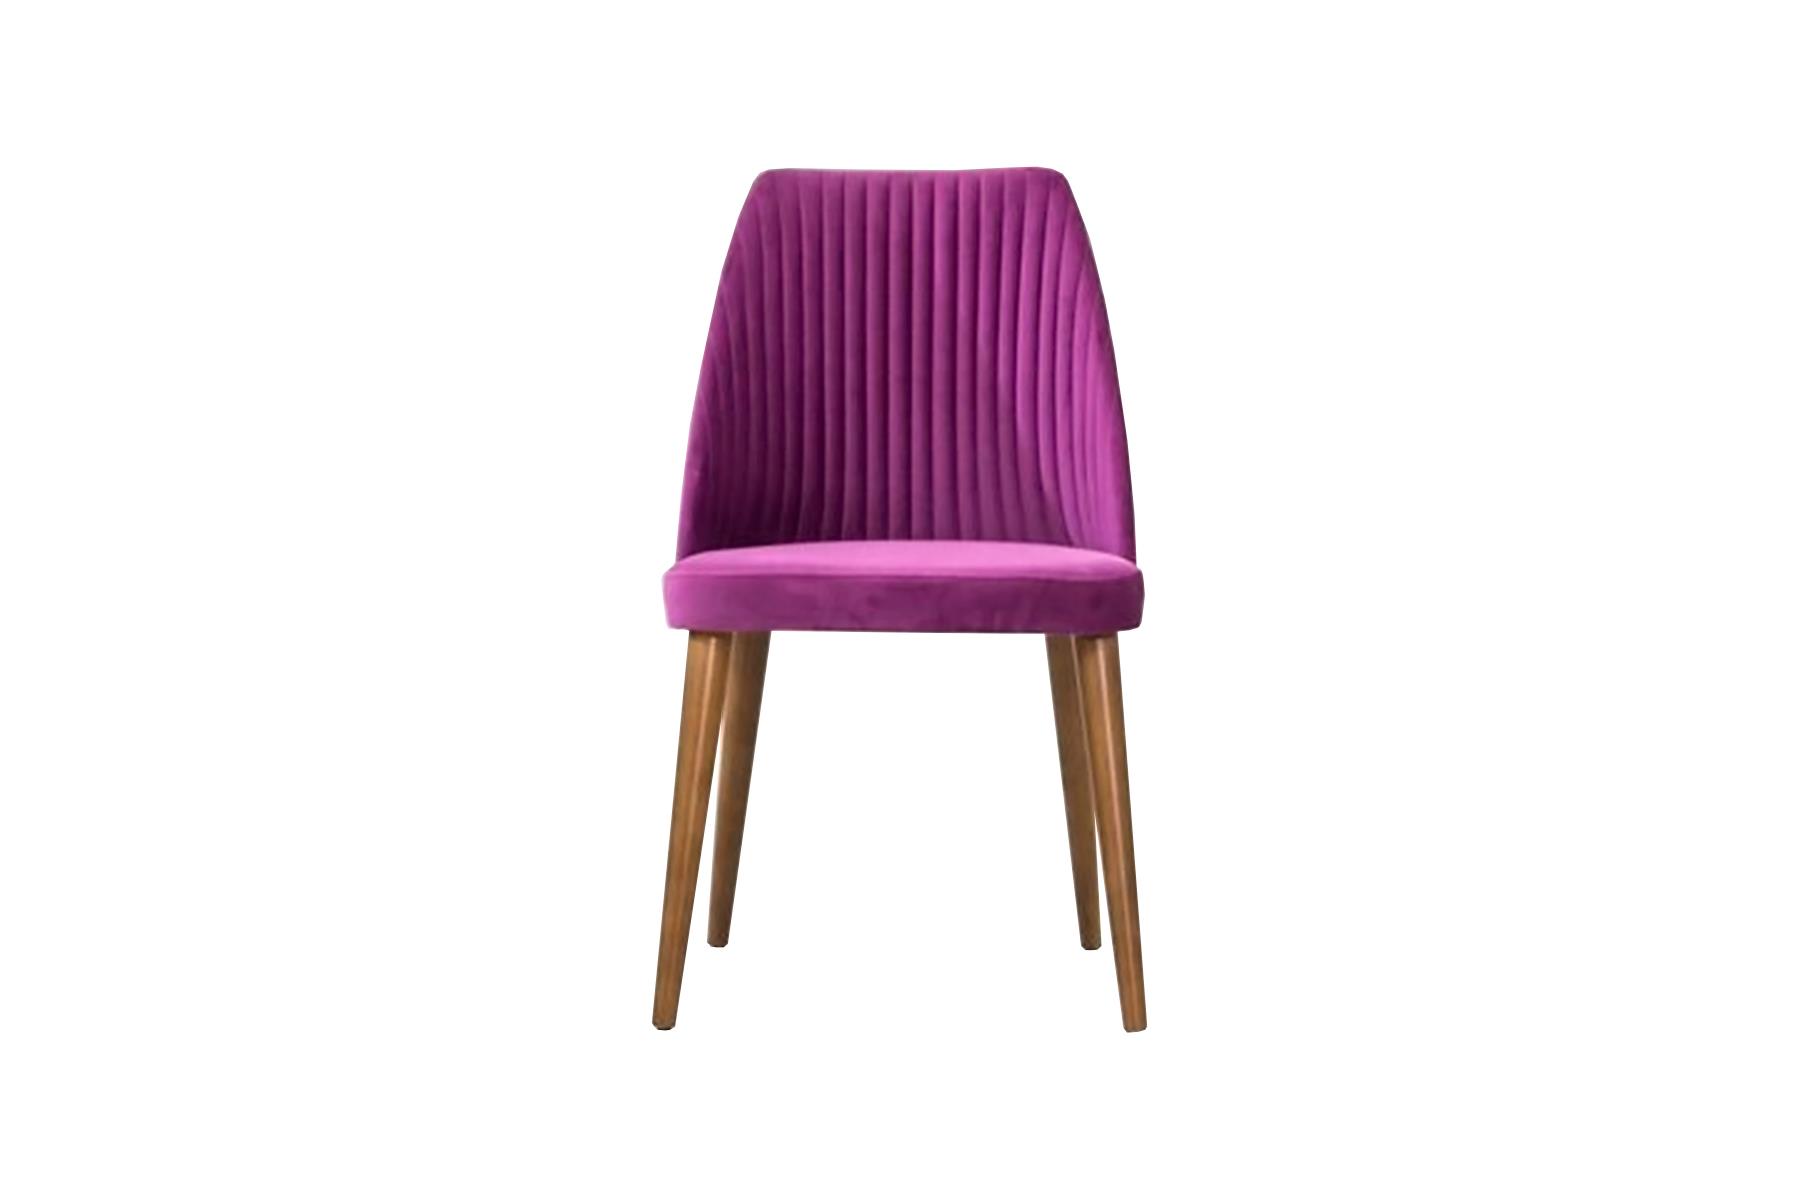 Tapacirana stolica Flora oduševljava modernom elegancijom i jasno definisanim, minimalističkim dizajnom. Idealno je prilagođena modernim stilovima opremanja. Mekana presvlaka i visoki naslon pozivaju da sjednete i opustite se.